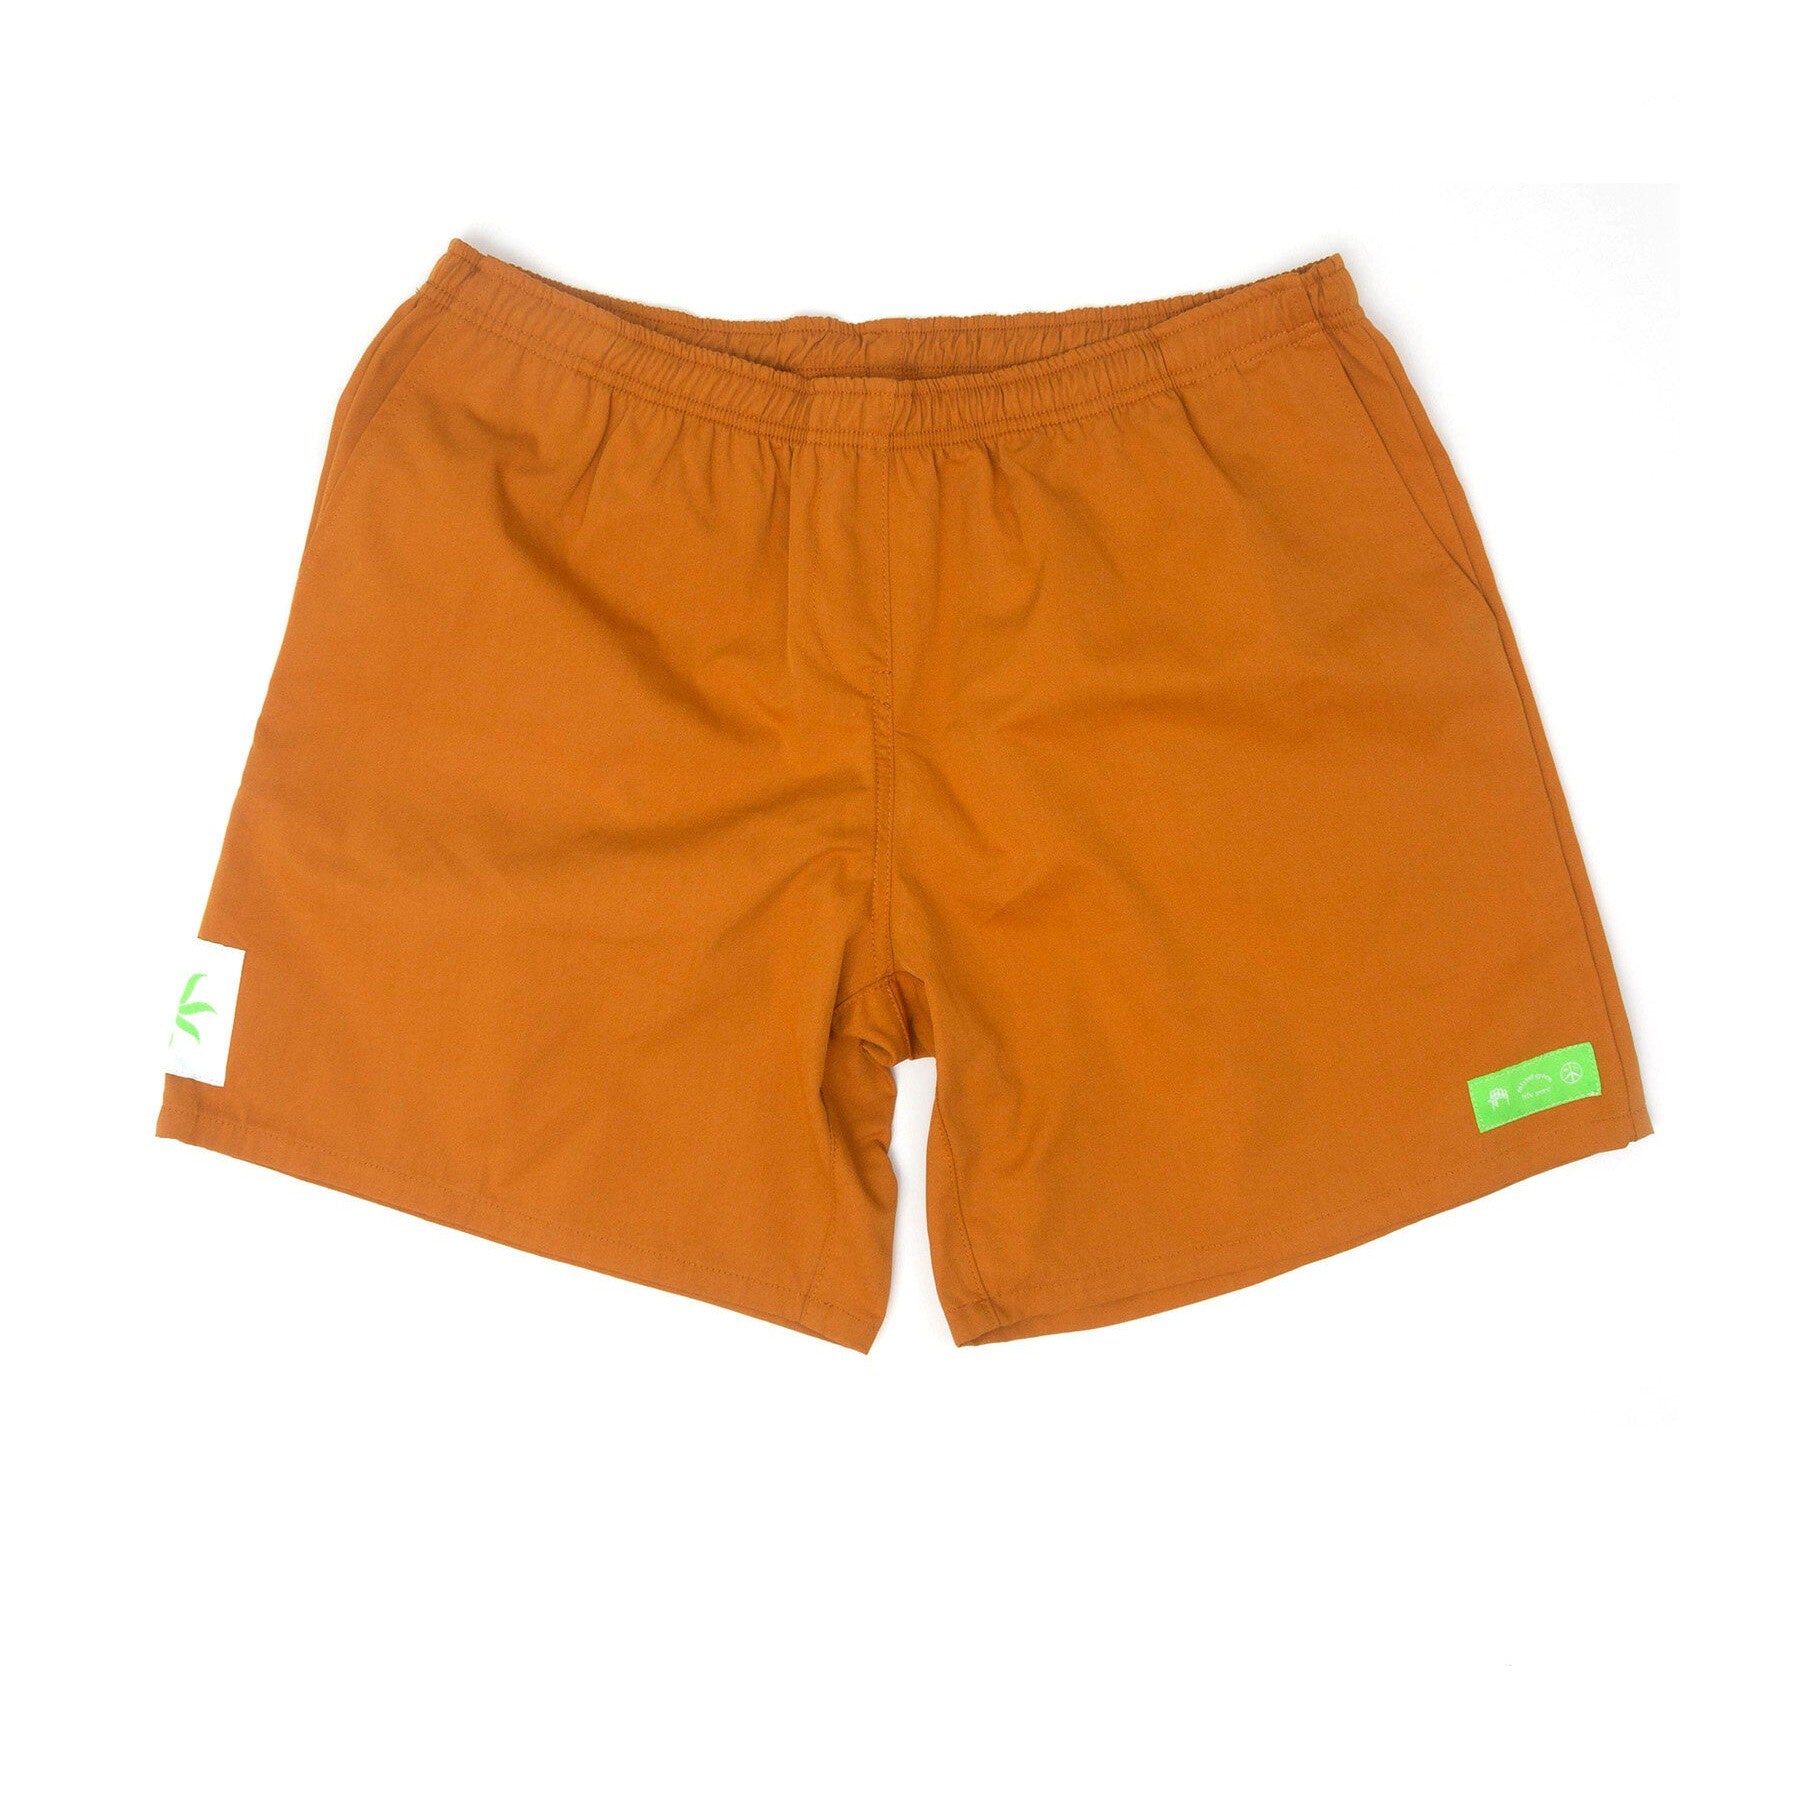 Mister Green Land Shorts - Orange-Mister Green-Mister Green